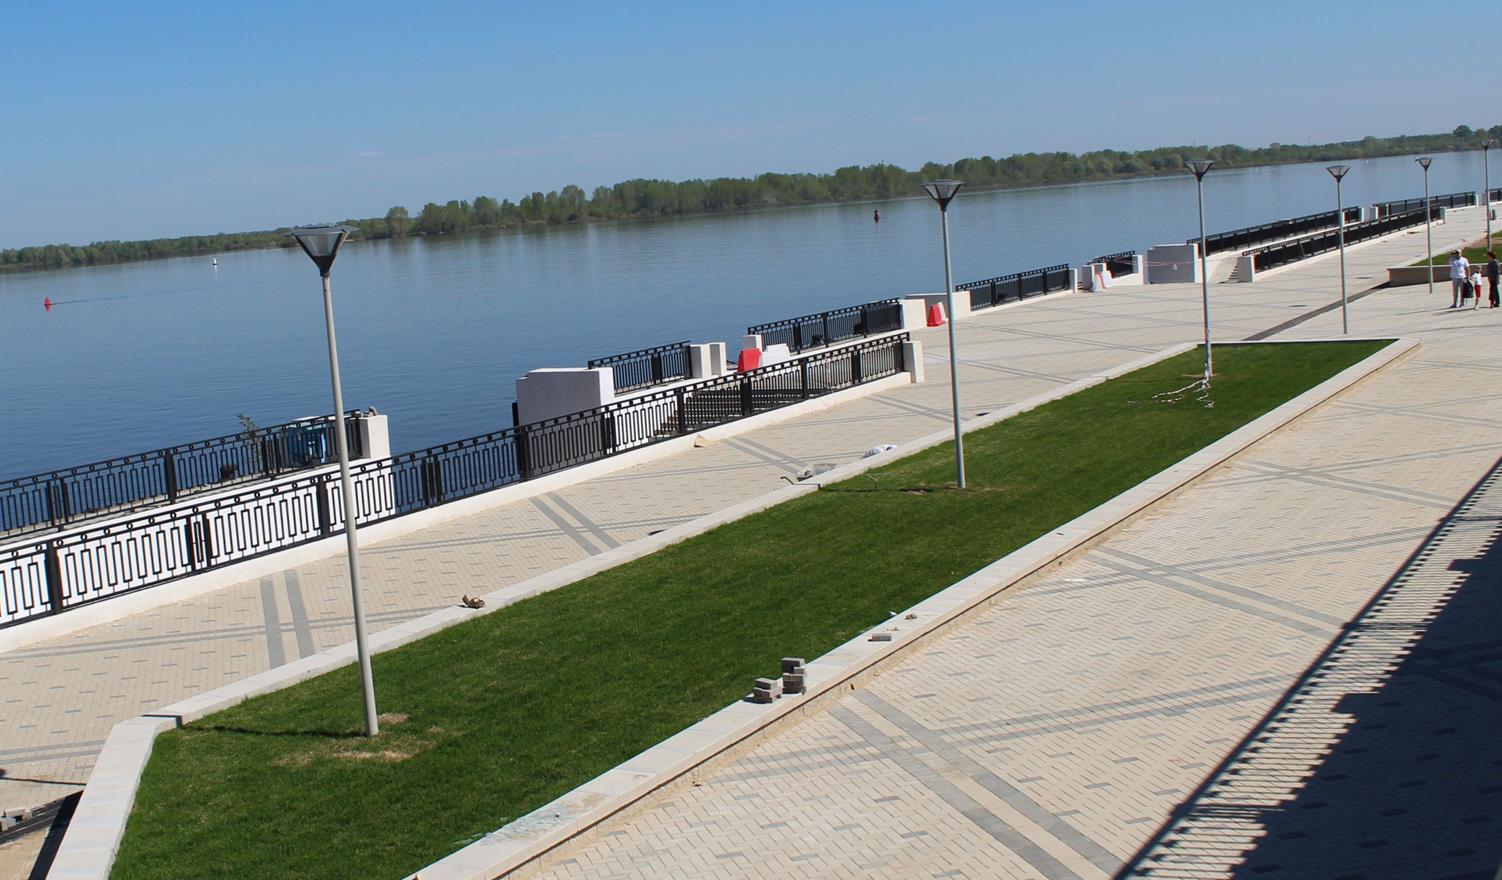 Праздник в честь открытия Нижне-Волжской набережной состоится в Нижнем Новгороде - фото 1